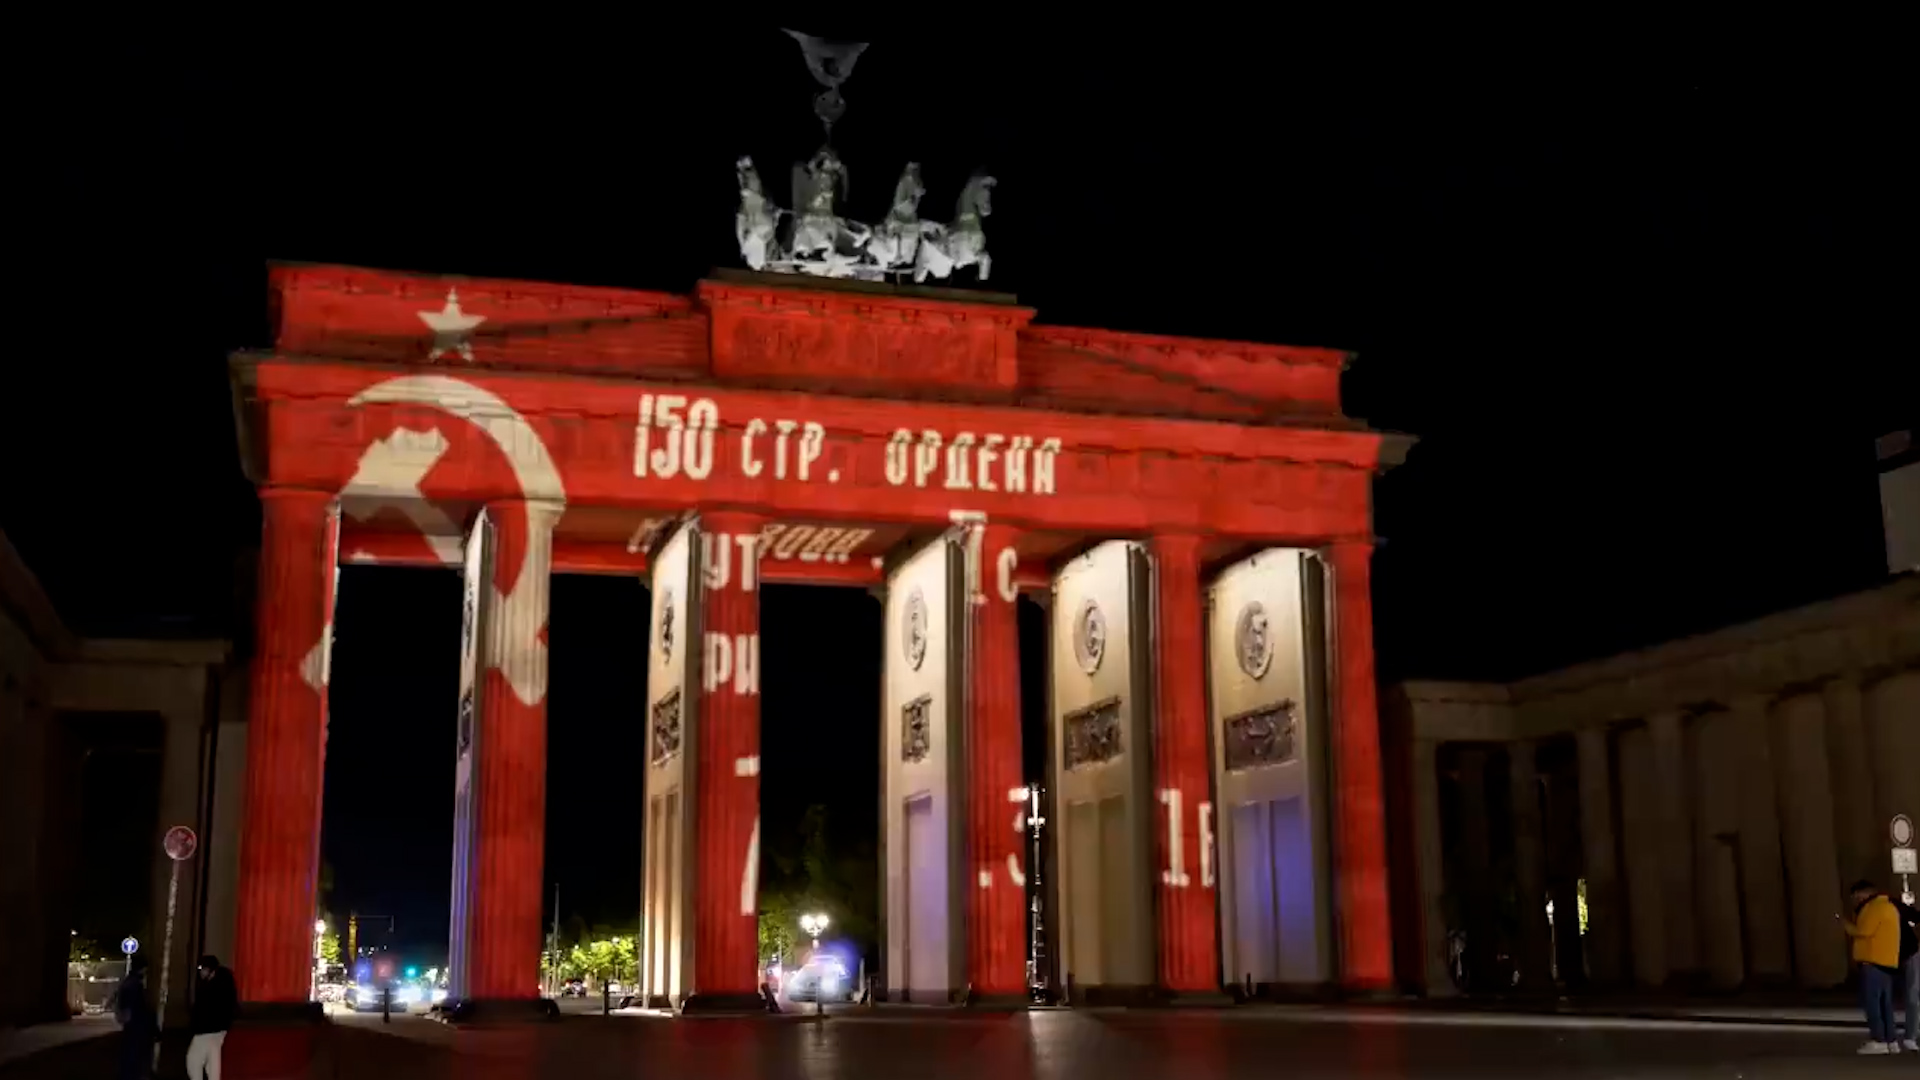 Berlin'deki Brandenburg Kapısı hacklendi: Sovyet Zafer Bayrağı aydınlattı